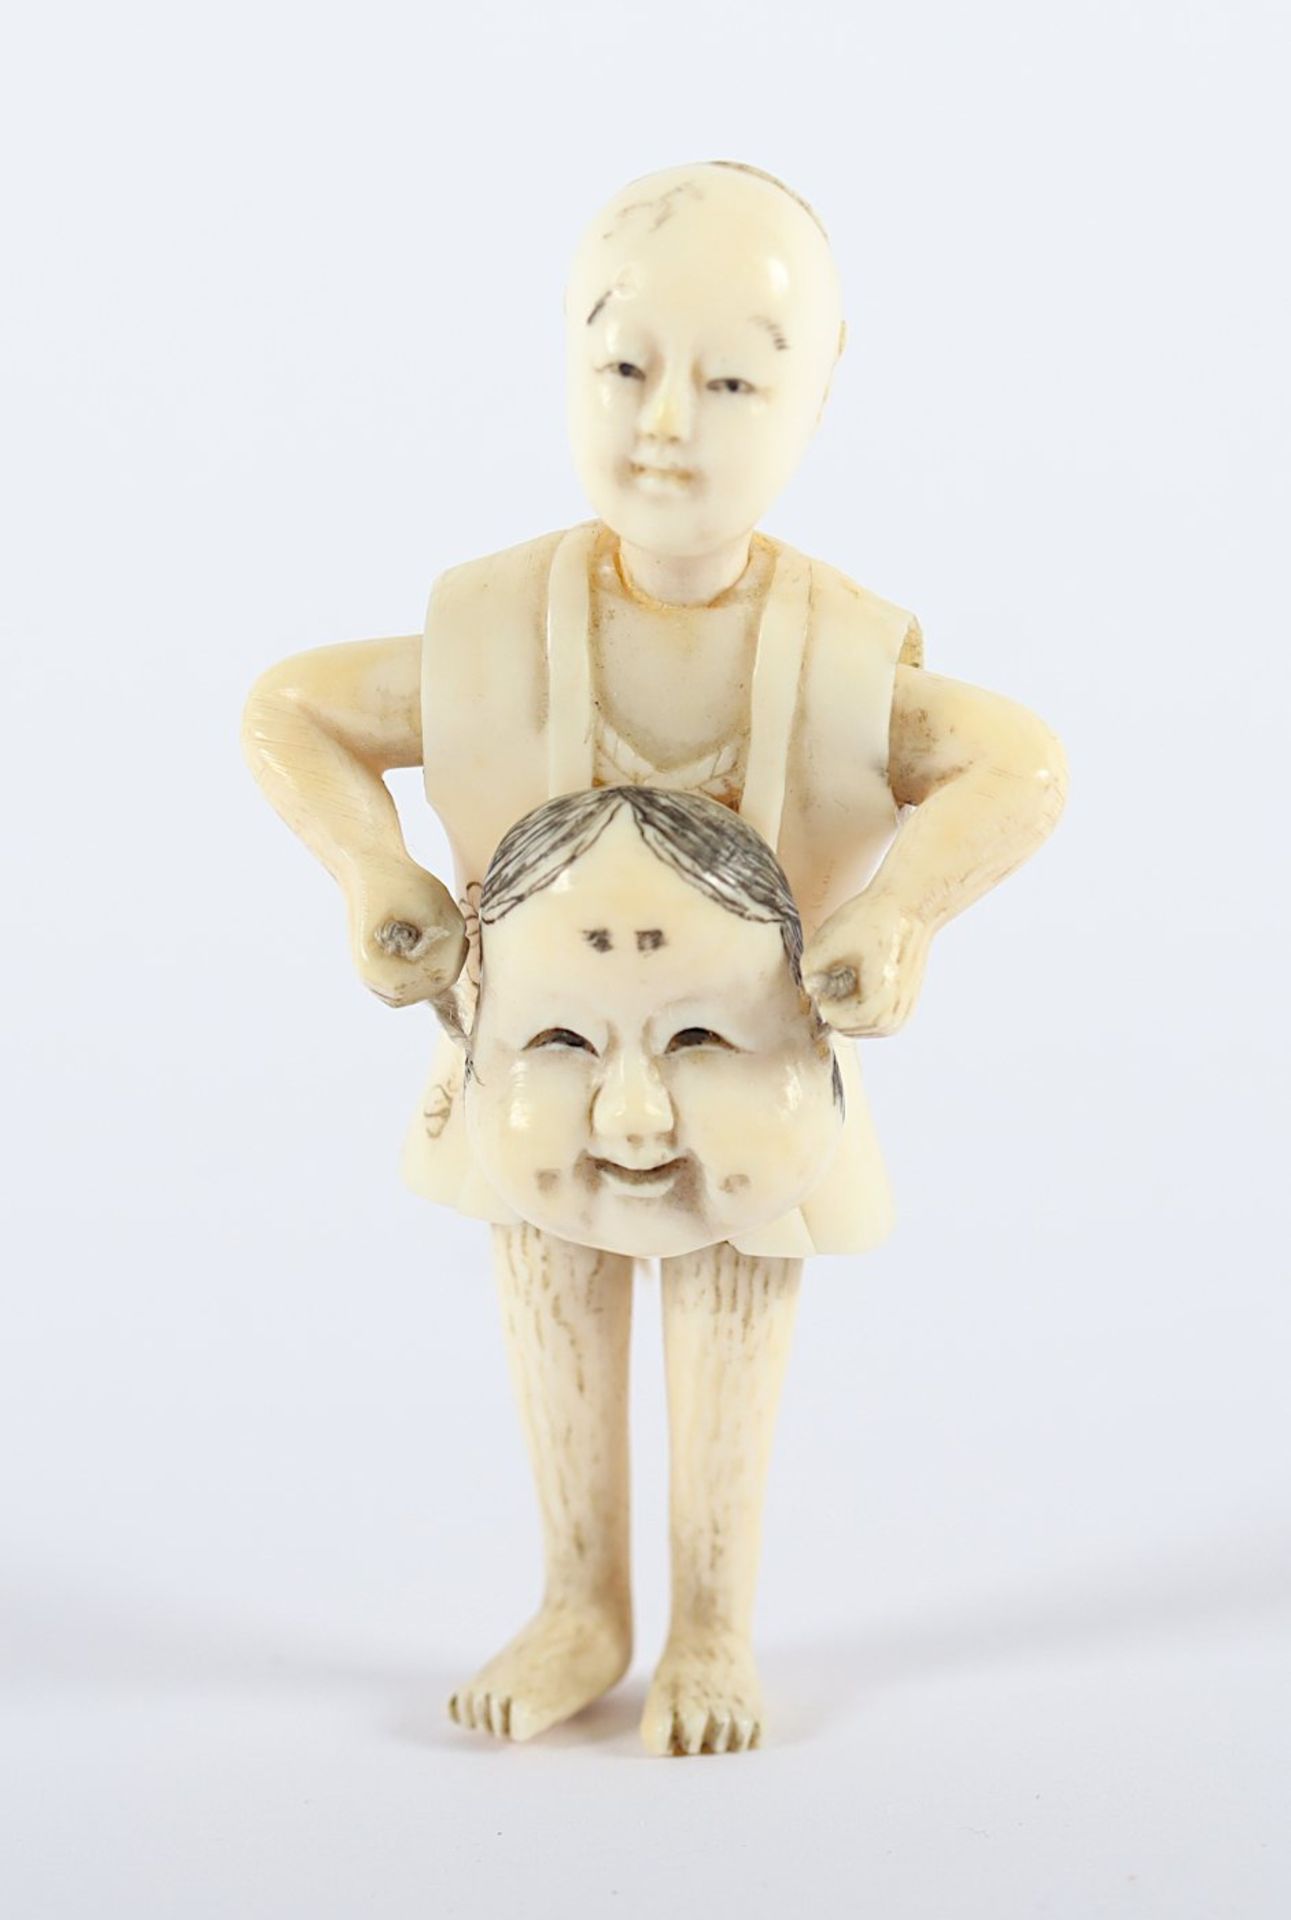 OKIMONO KIND MIT MASKE, Elfenbein, mehrteilig, ein Knabe hält mit beiden Händen eine Okame-Maske,